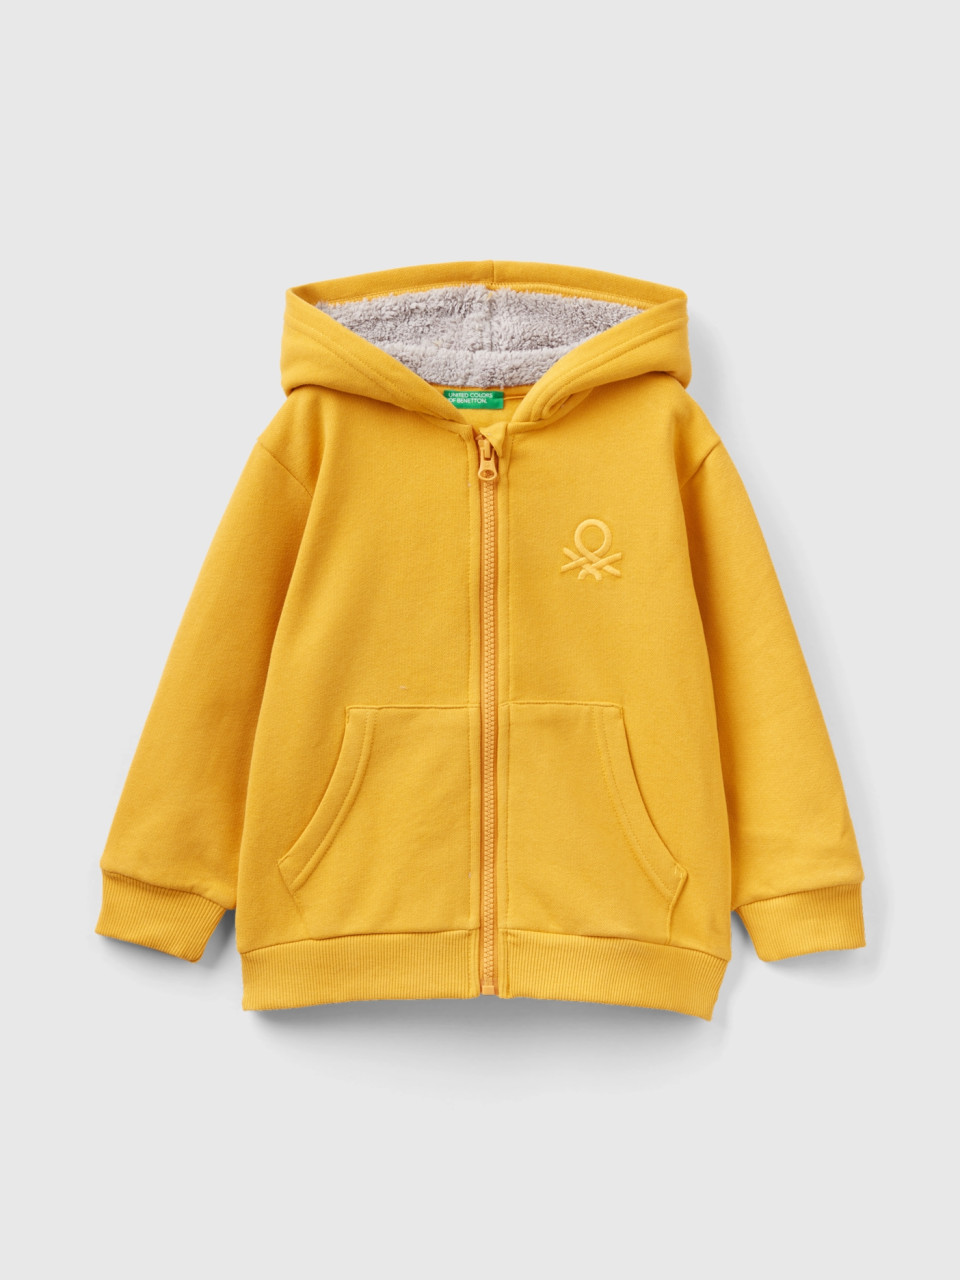 Benetton, Sweatshirt With Lined Hood, Yellow, Kids